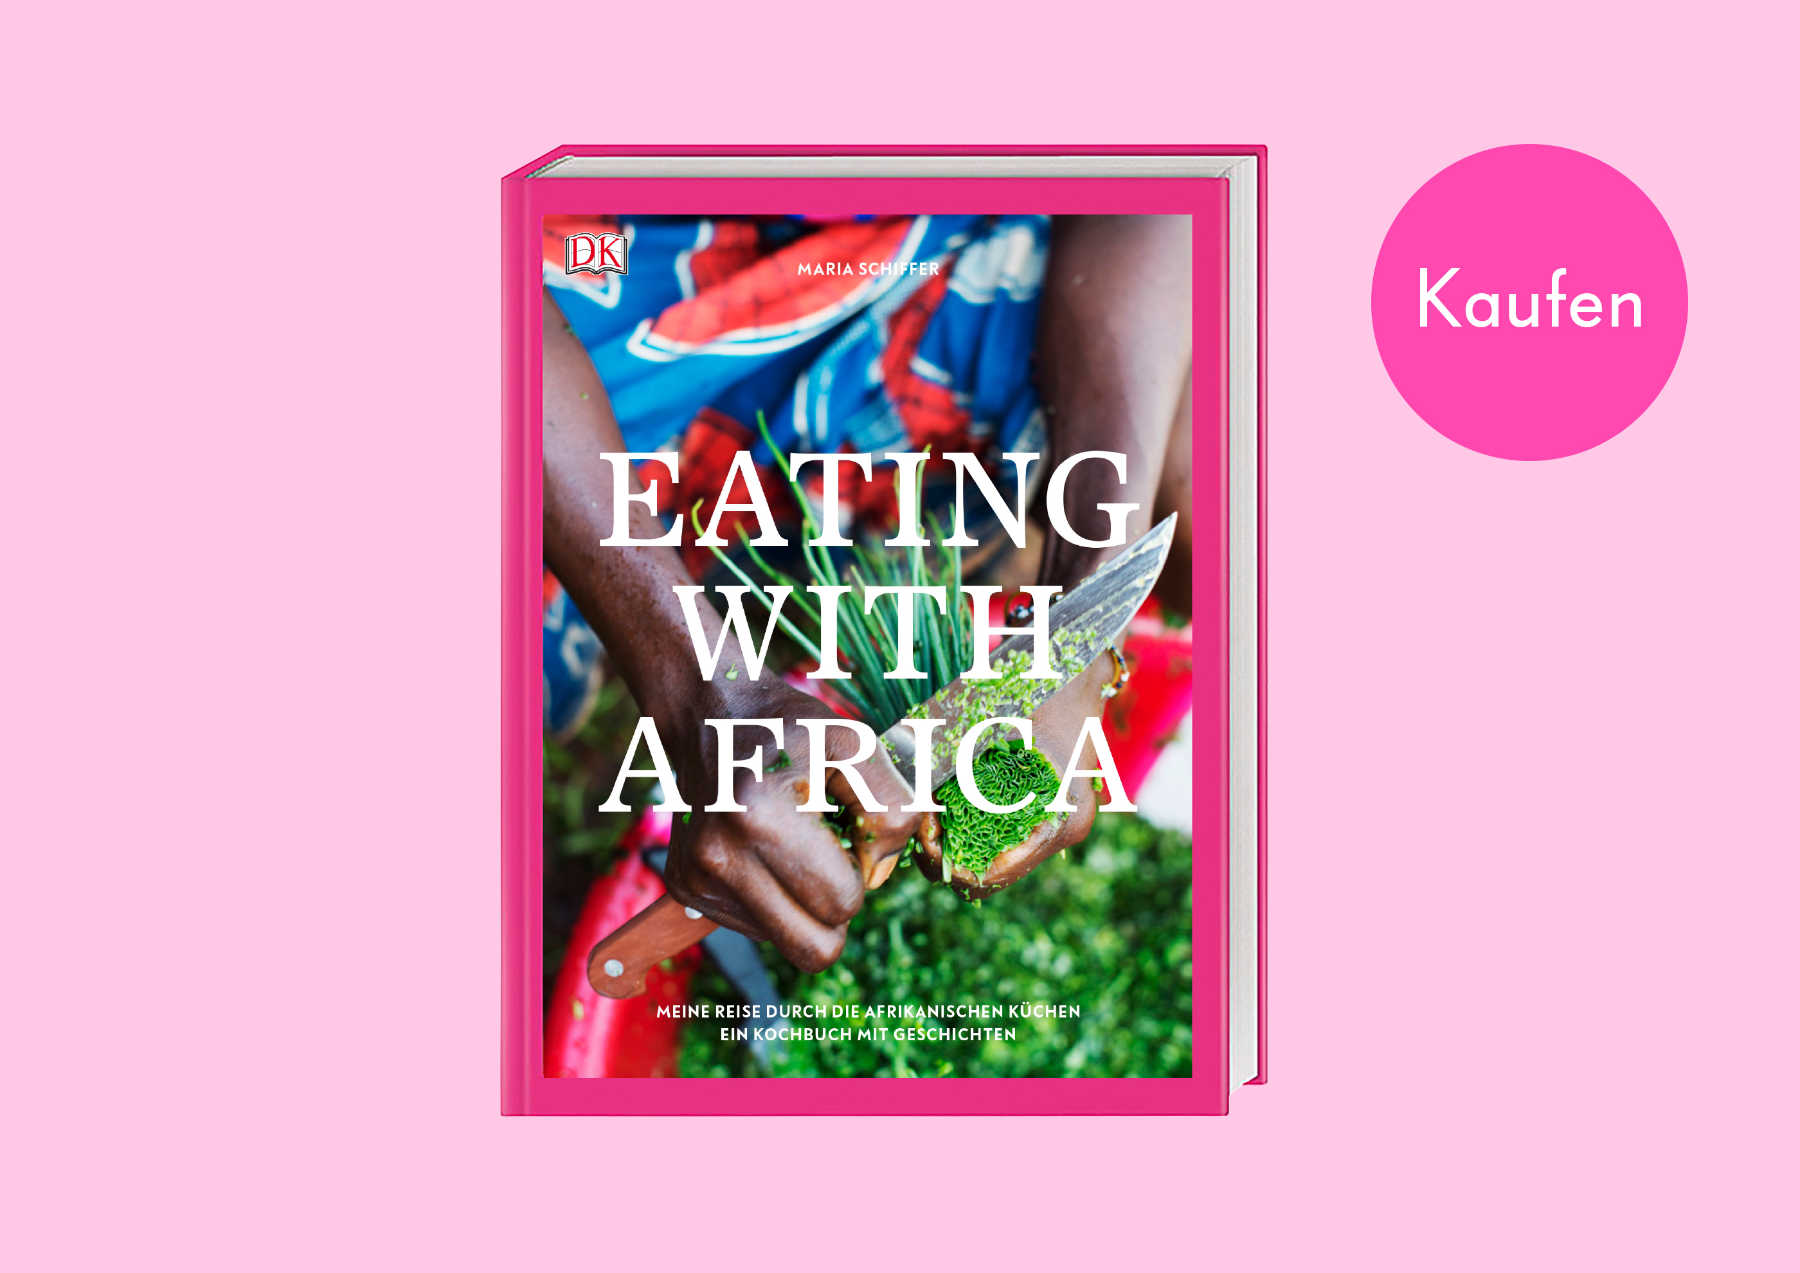 Das Afrika Kochbuch von Maria Schiffer